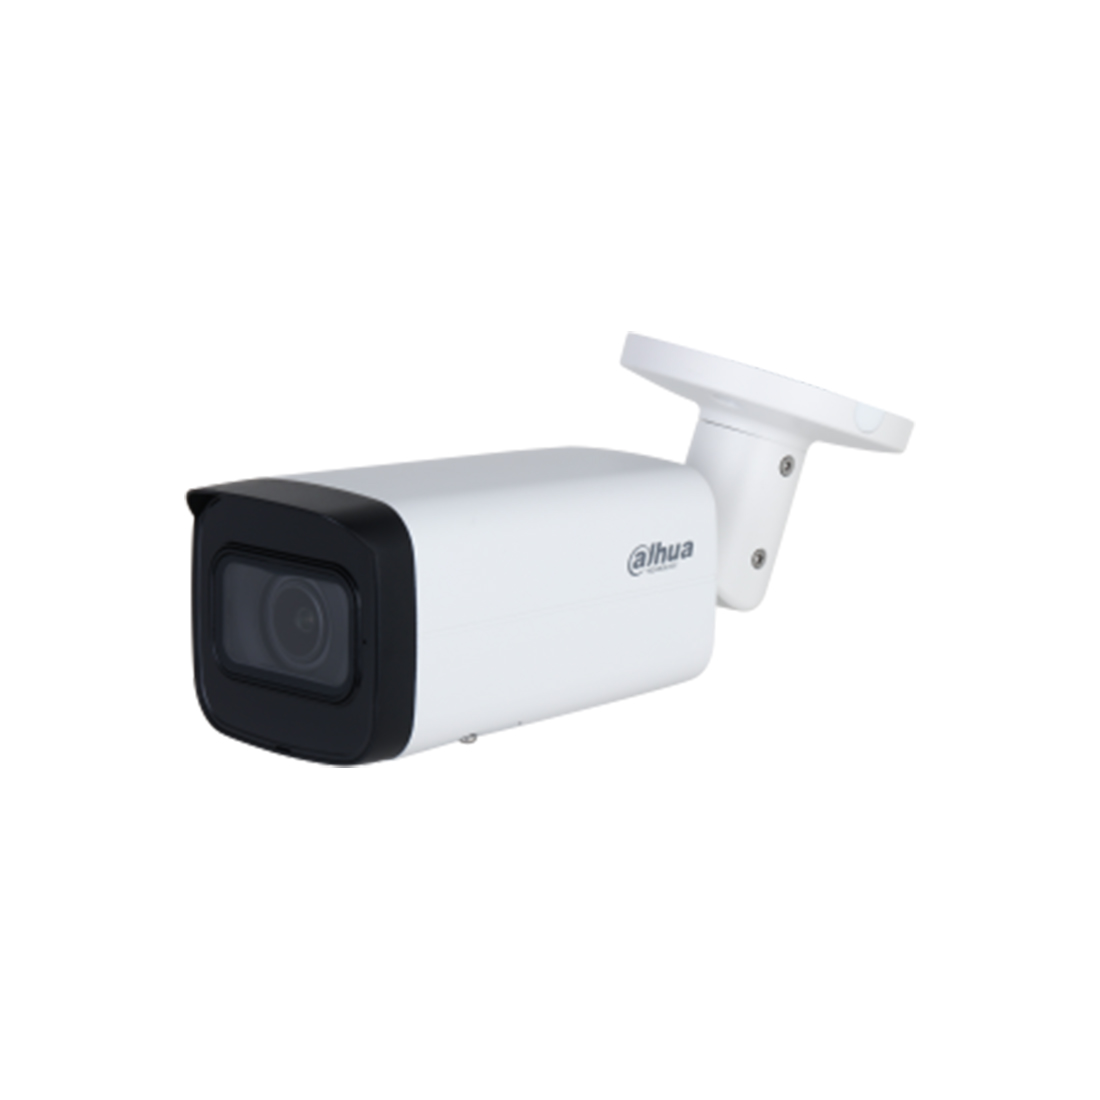 IP видеокамера, Dahua, DH-IPC-HFW2241T-ZS, цилиндрическая, 2-мегапиксельная ИК-вариофокальная WizSen